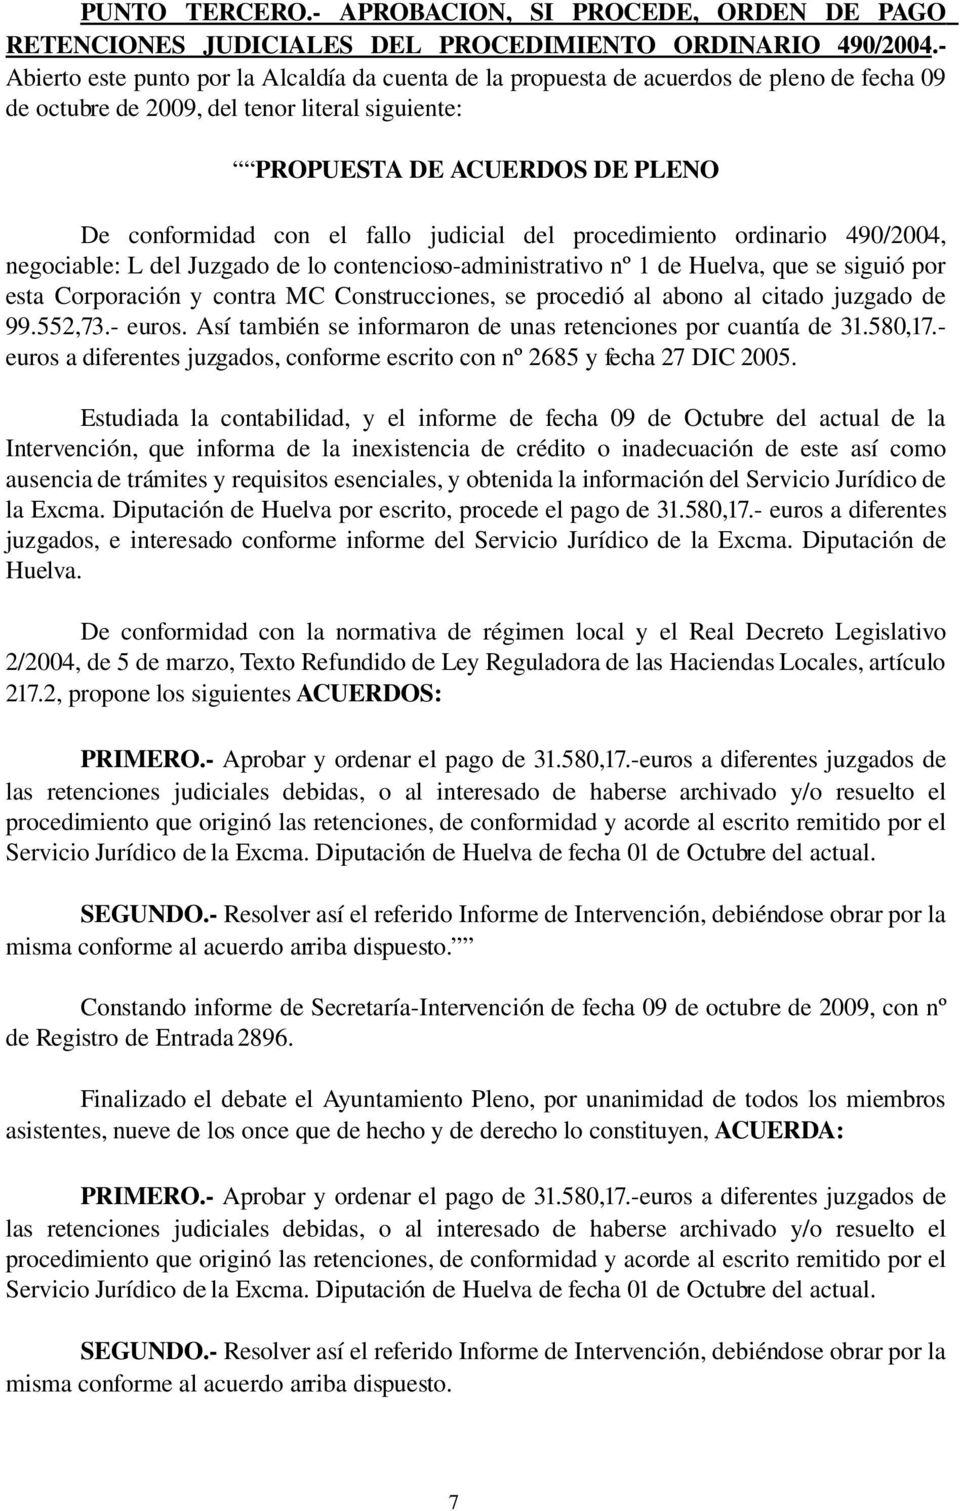 fallo judicial del procedimiento ordinario 490/2004, negociable: L del Juzgado de lo contencioso administrativo nº 1 de Huelva, que se siguió por esta Corporación y contra MC Construcciones, se